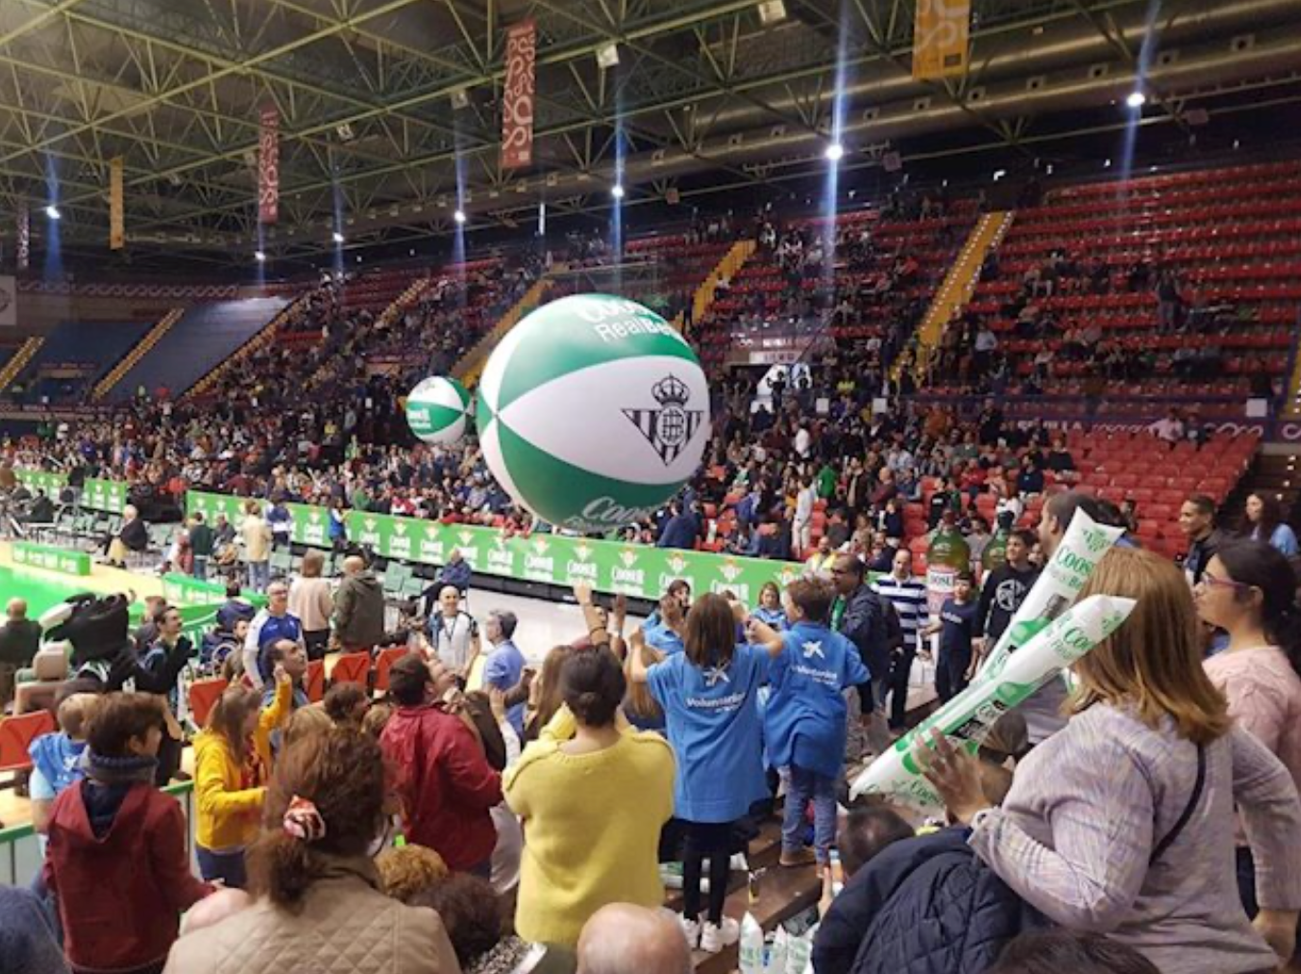 Voluntarios de La Caixa organizan una grada solidaria con entidades sociales en un partido de baloncesto en Sevilla